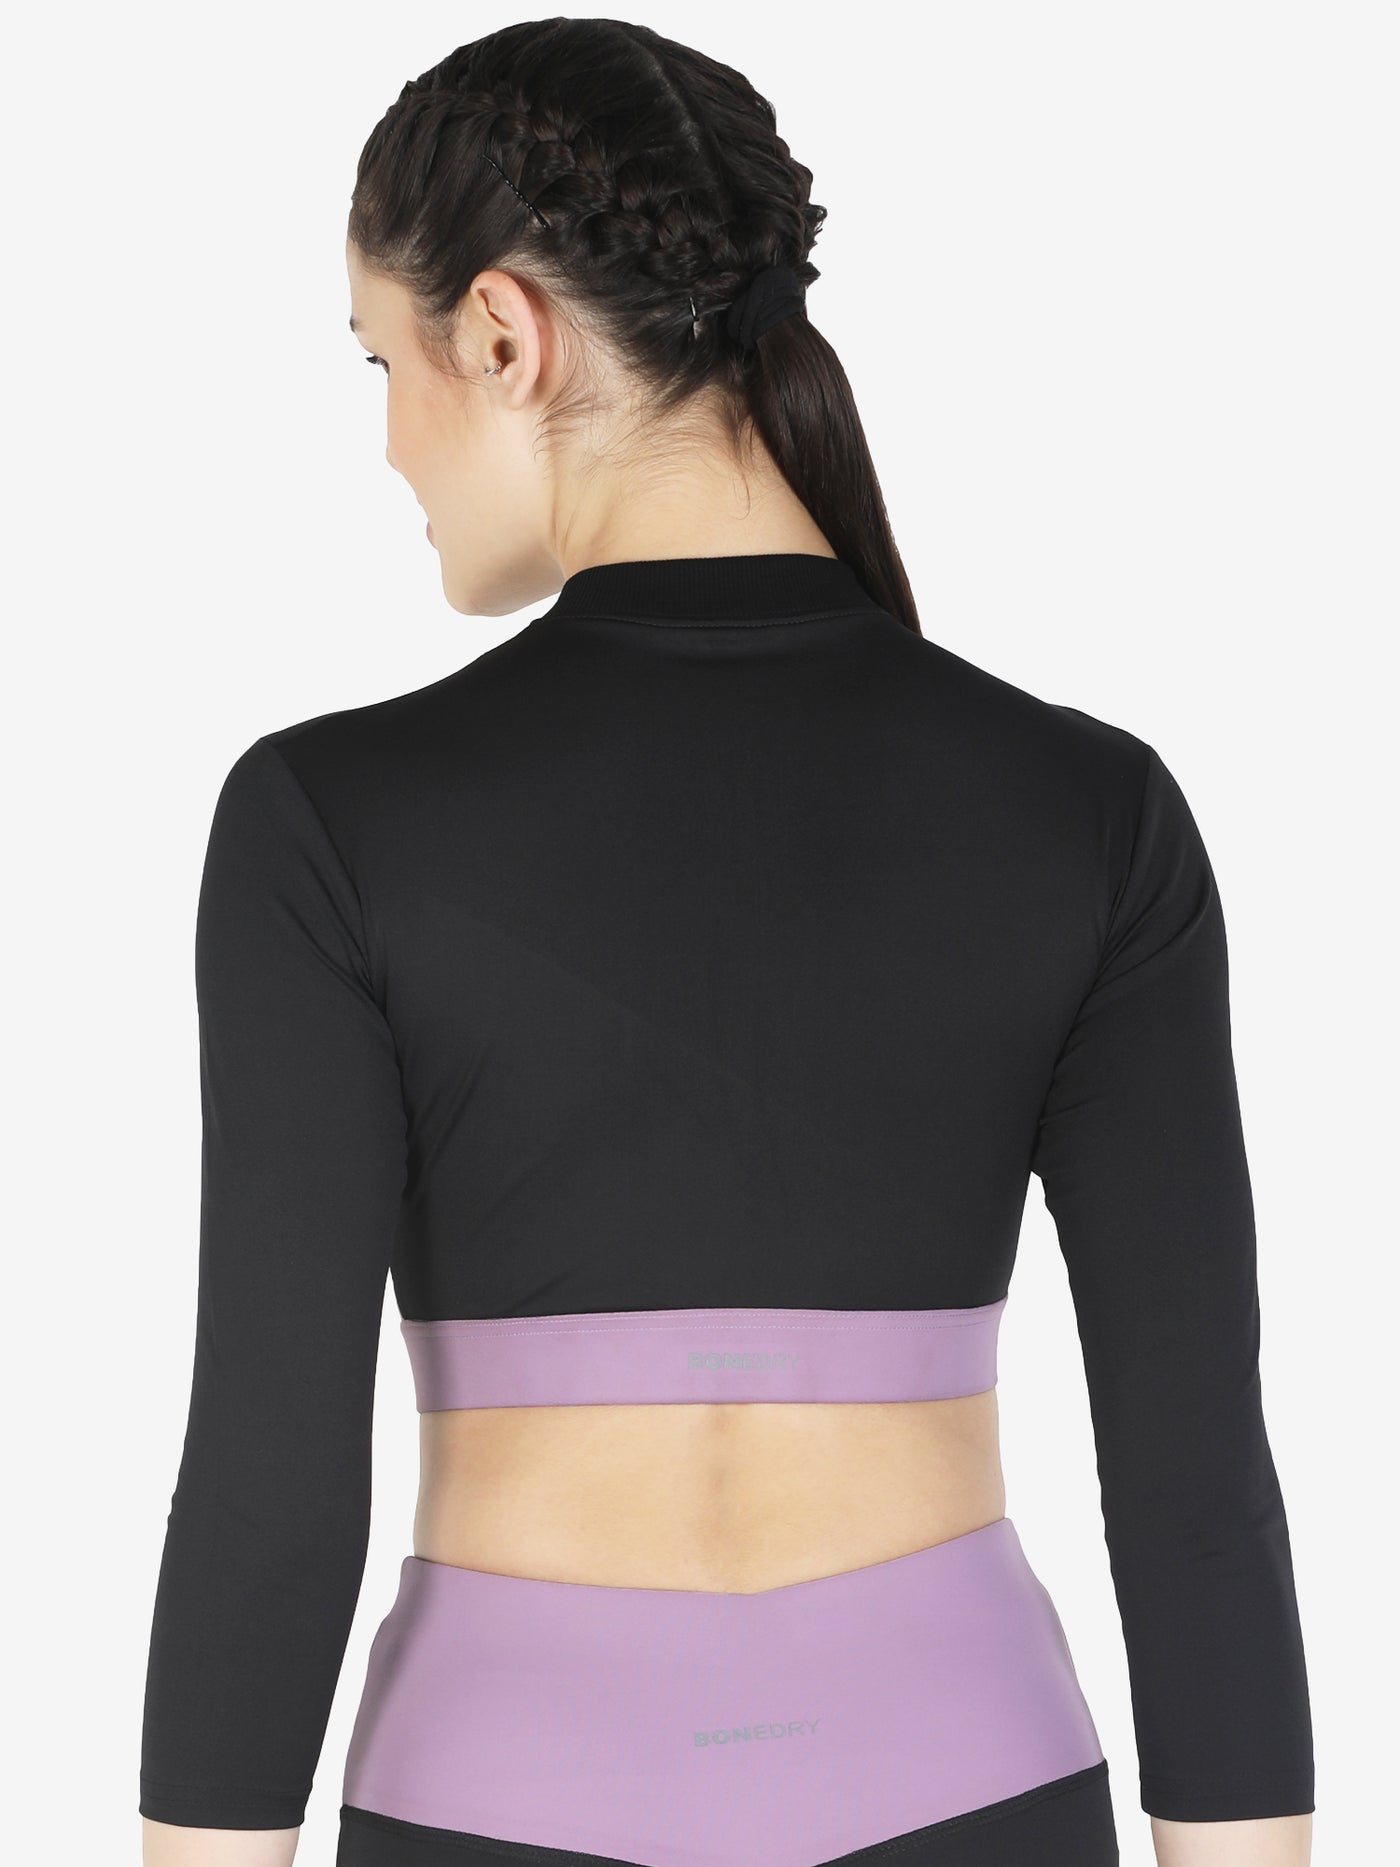 Pair of High Waist Yoke Belt Printed Workout Tight & Front Zipper Sports Bra – Purple